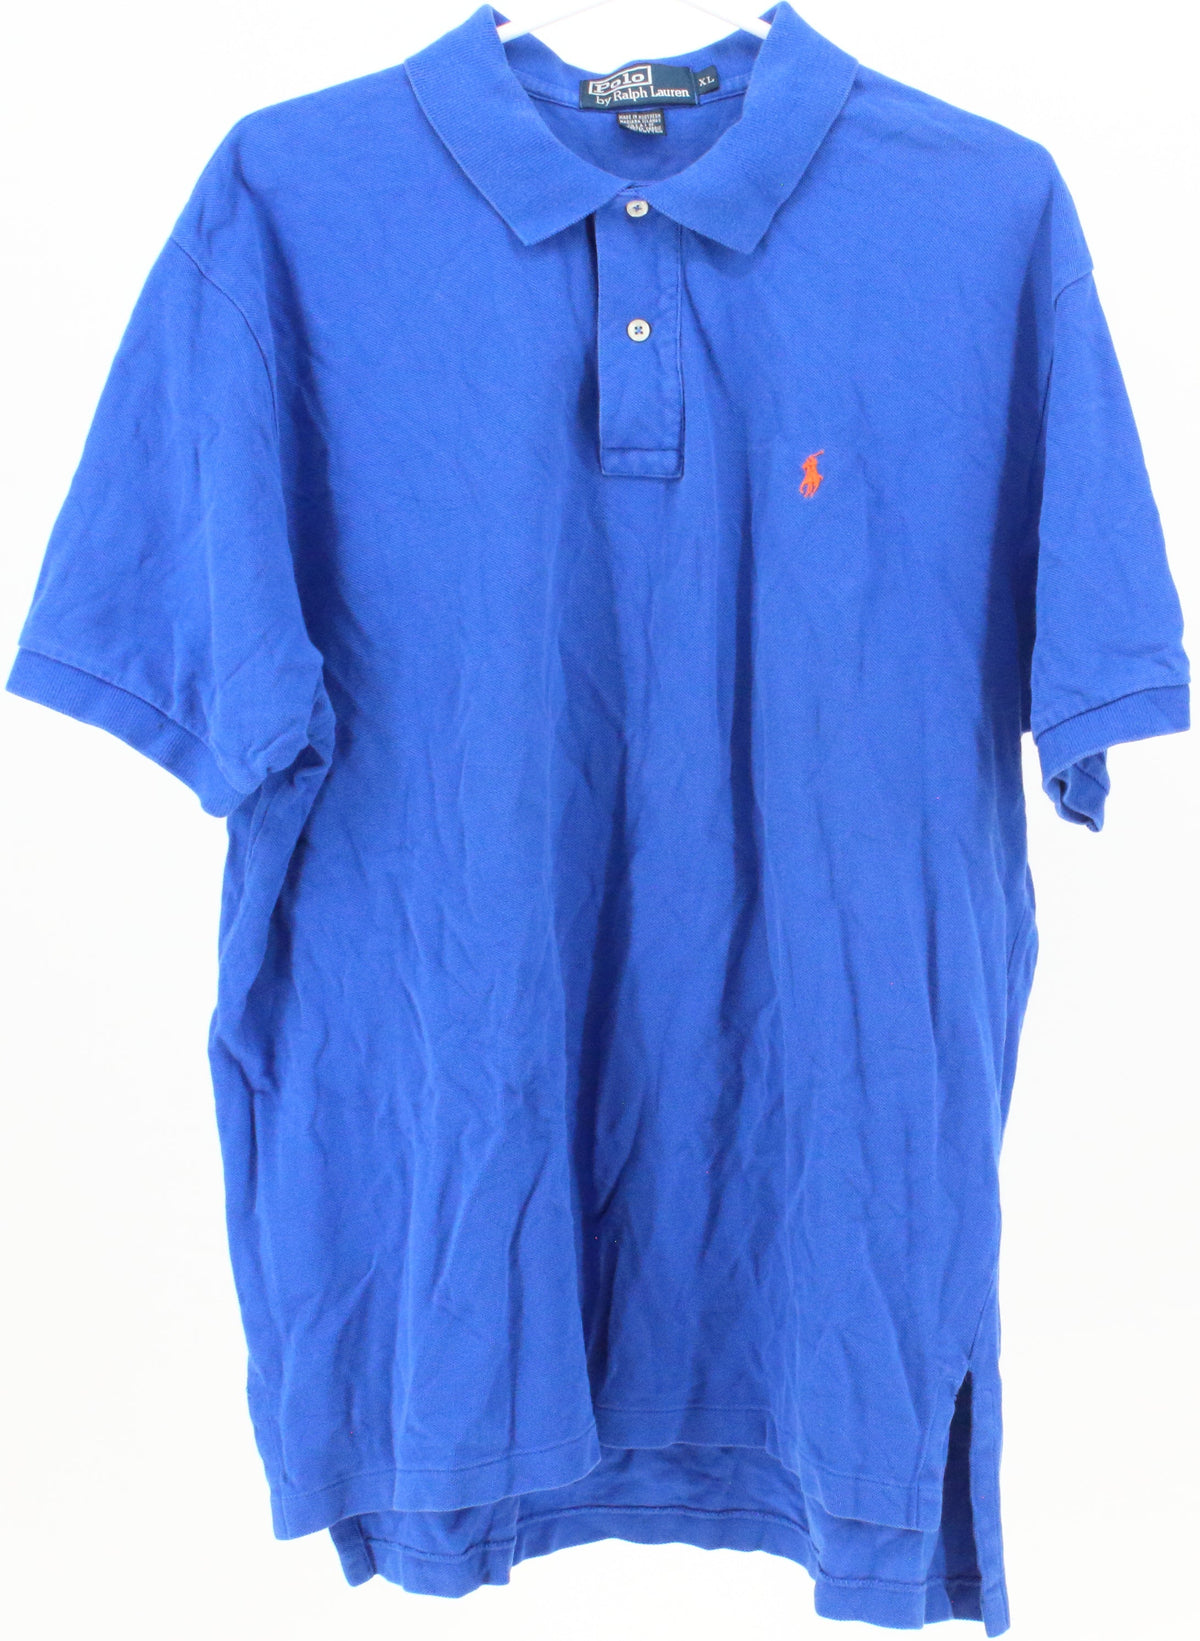 Polo by Ralph Lauren Royal Blue Golf Shirt